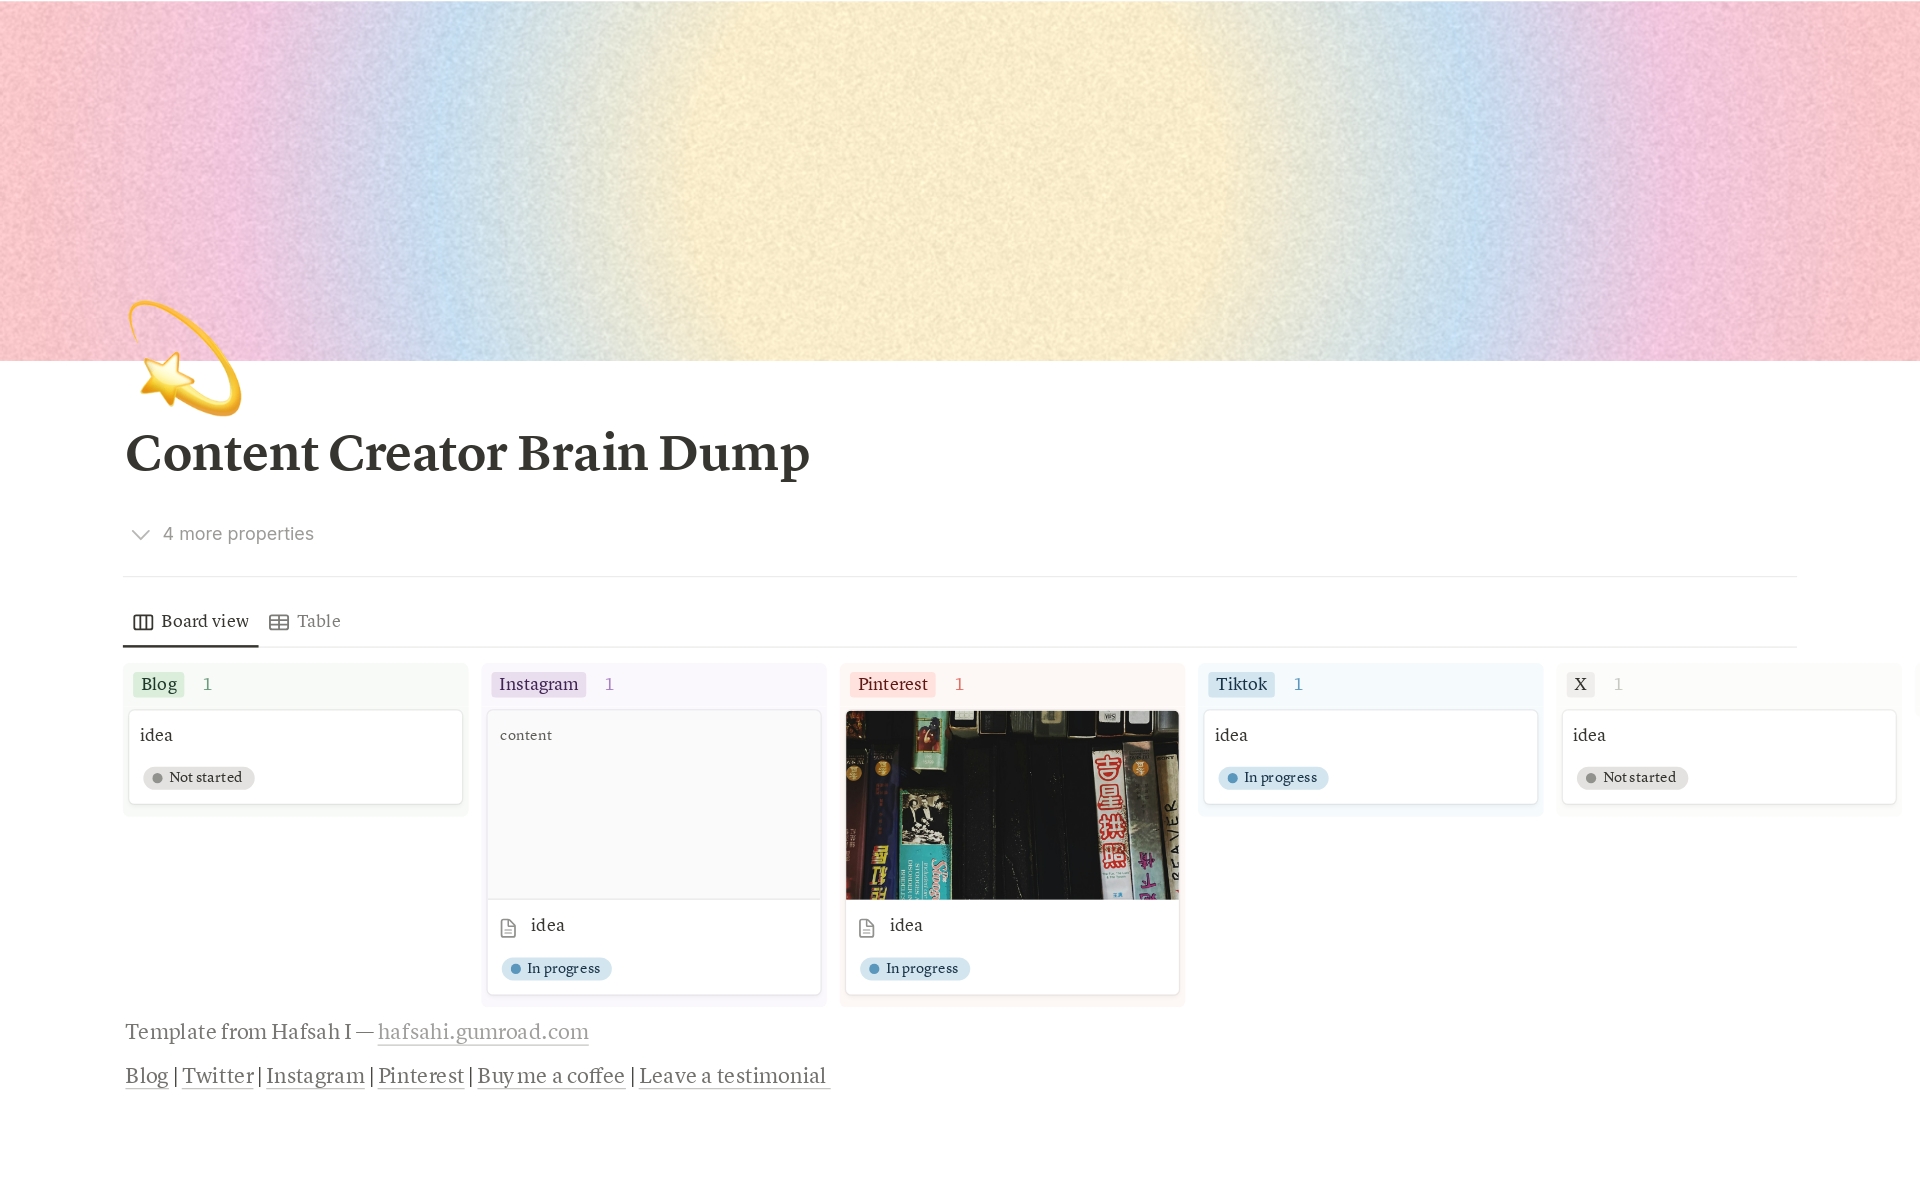 Vista previa de una plantilla para Content Creator Brain Dump